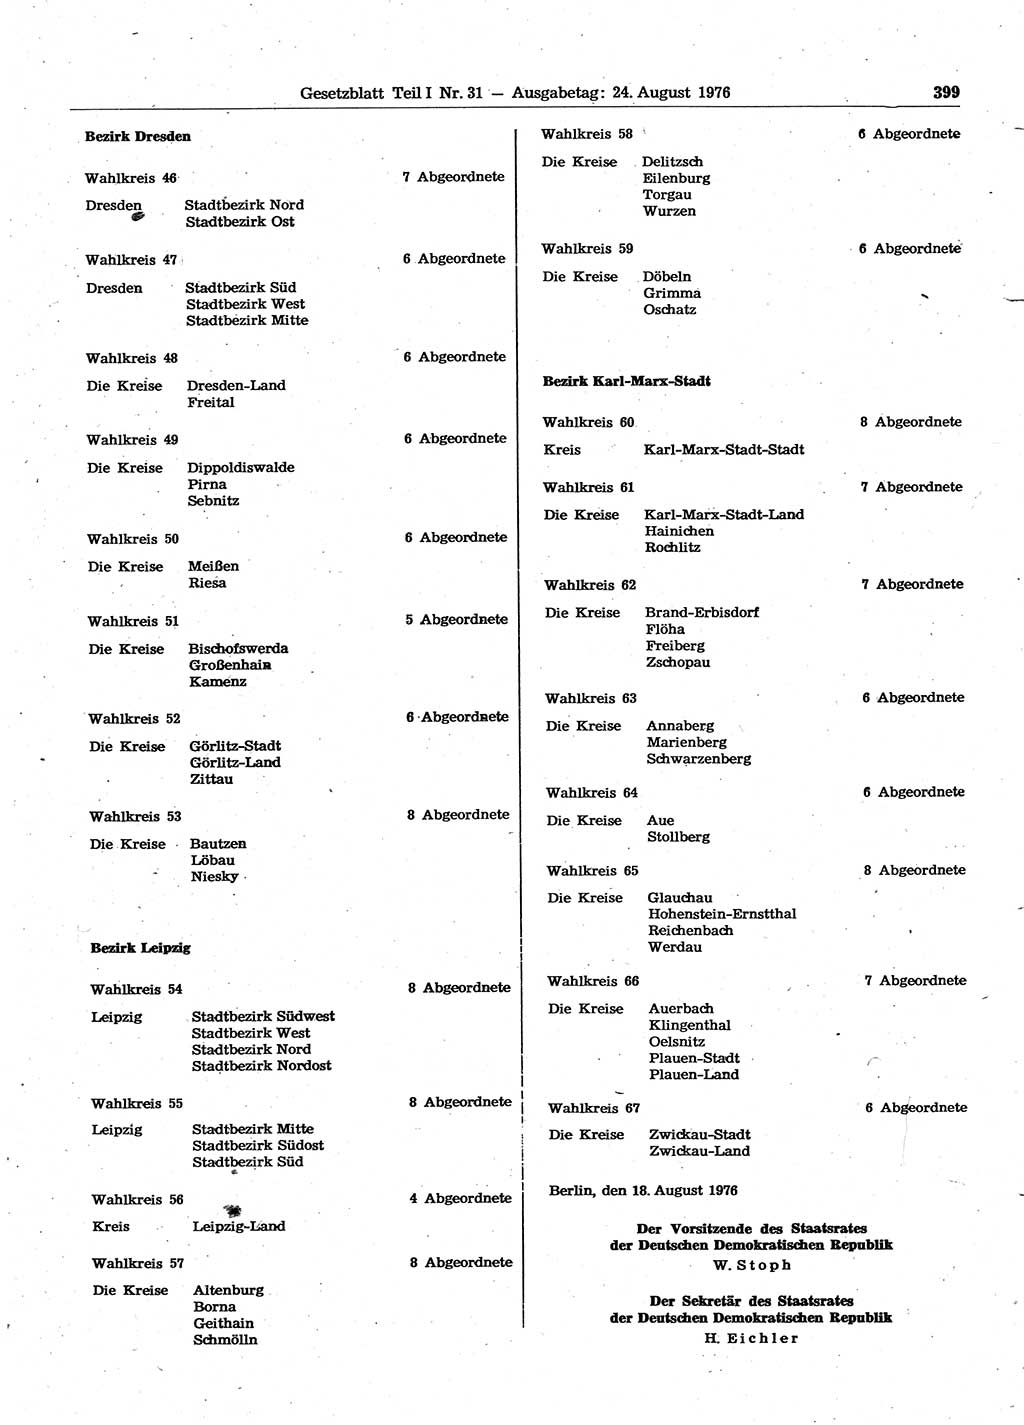 Gesetzblatt (GBl.) der Deutschen Demokratischen Republik (DDR) Teil Ⅰ 1976, Seite 399 (GBl. DDR Ⅰ 1976, S. 399)